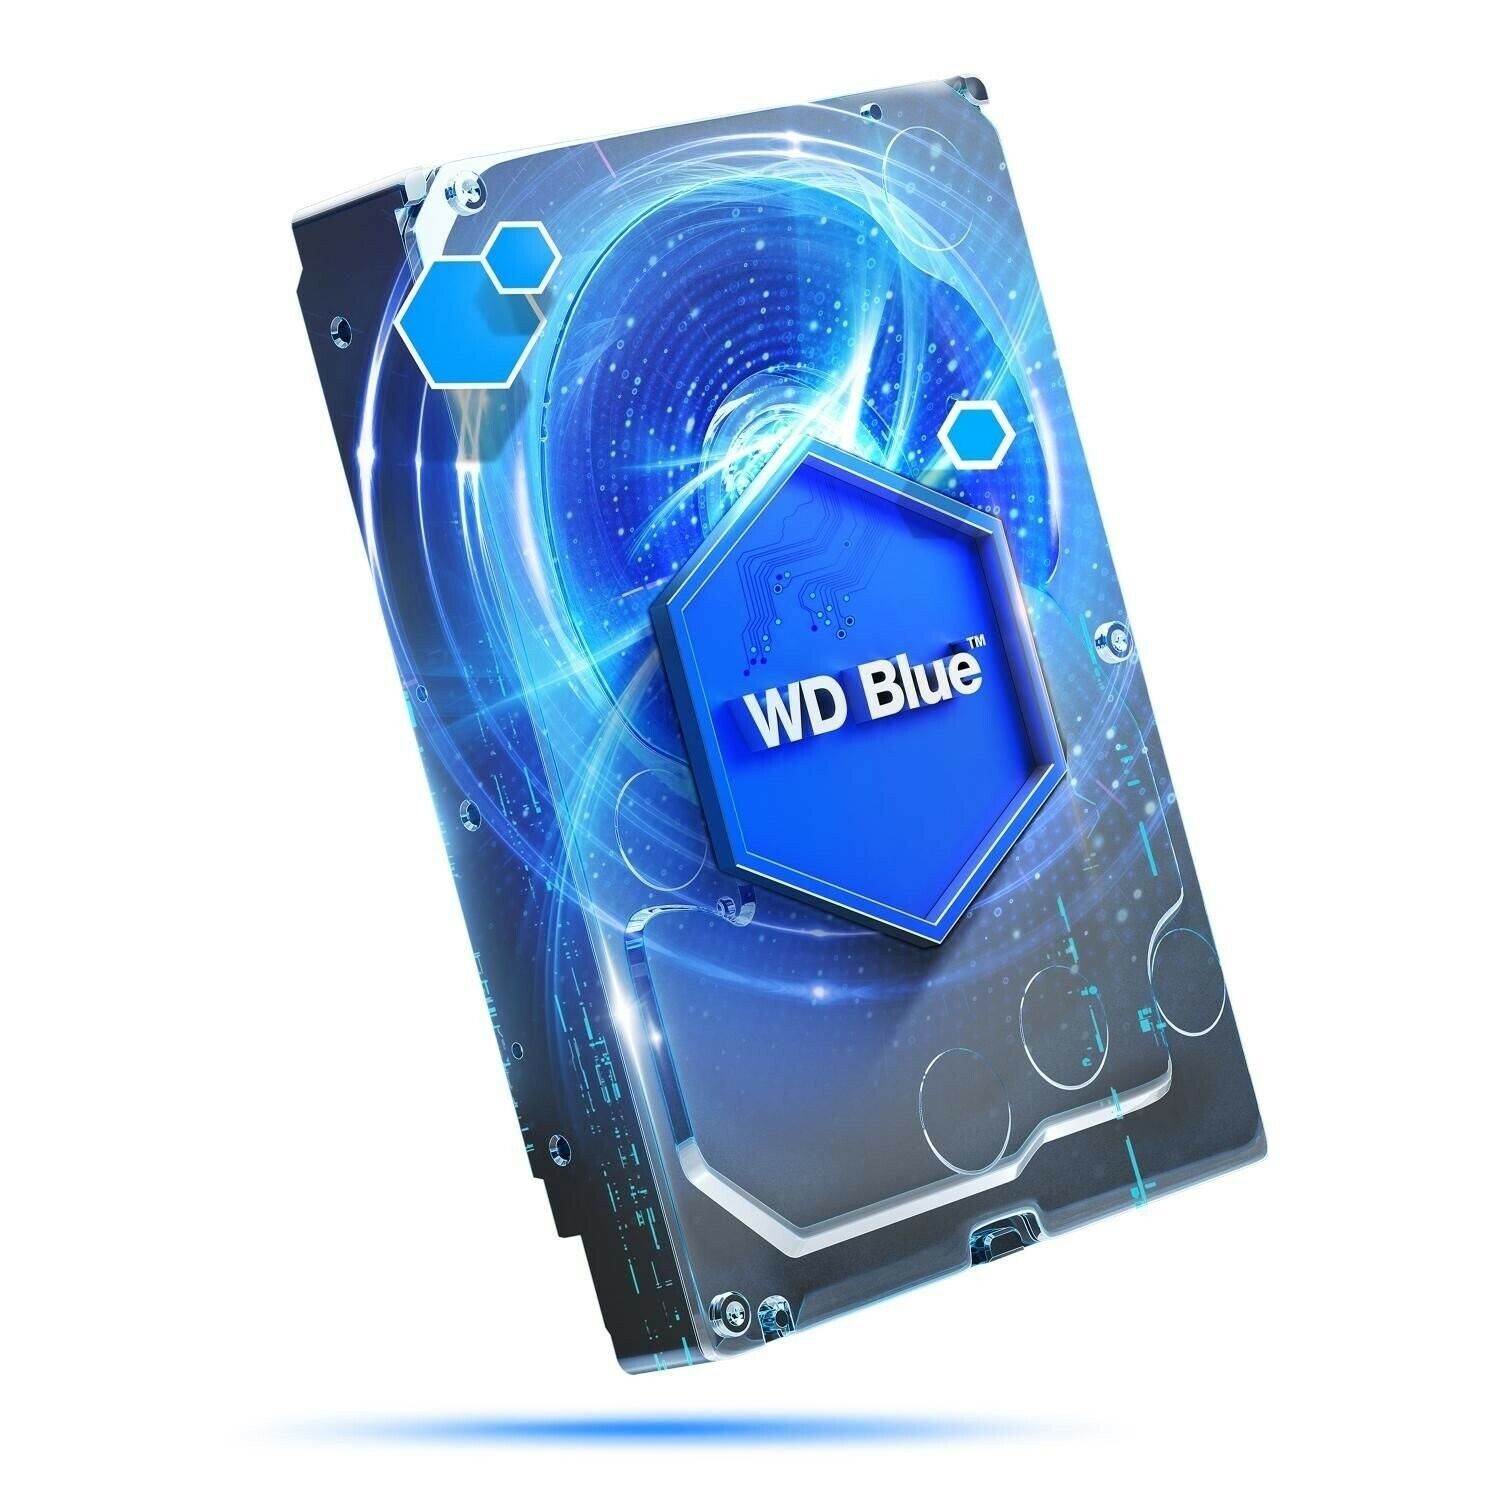 NEW Dell Vostro 3669 - 1TB SATA Hard Drive with Windows 7 Professional 64-Bit